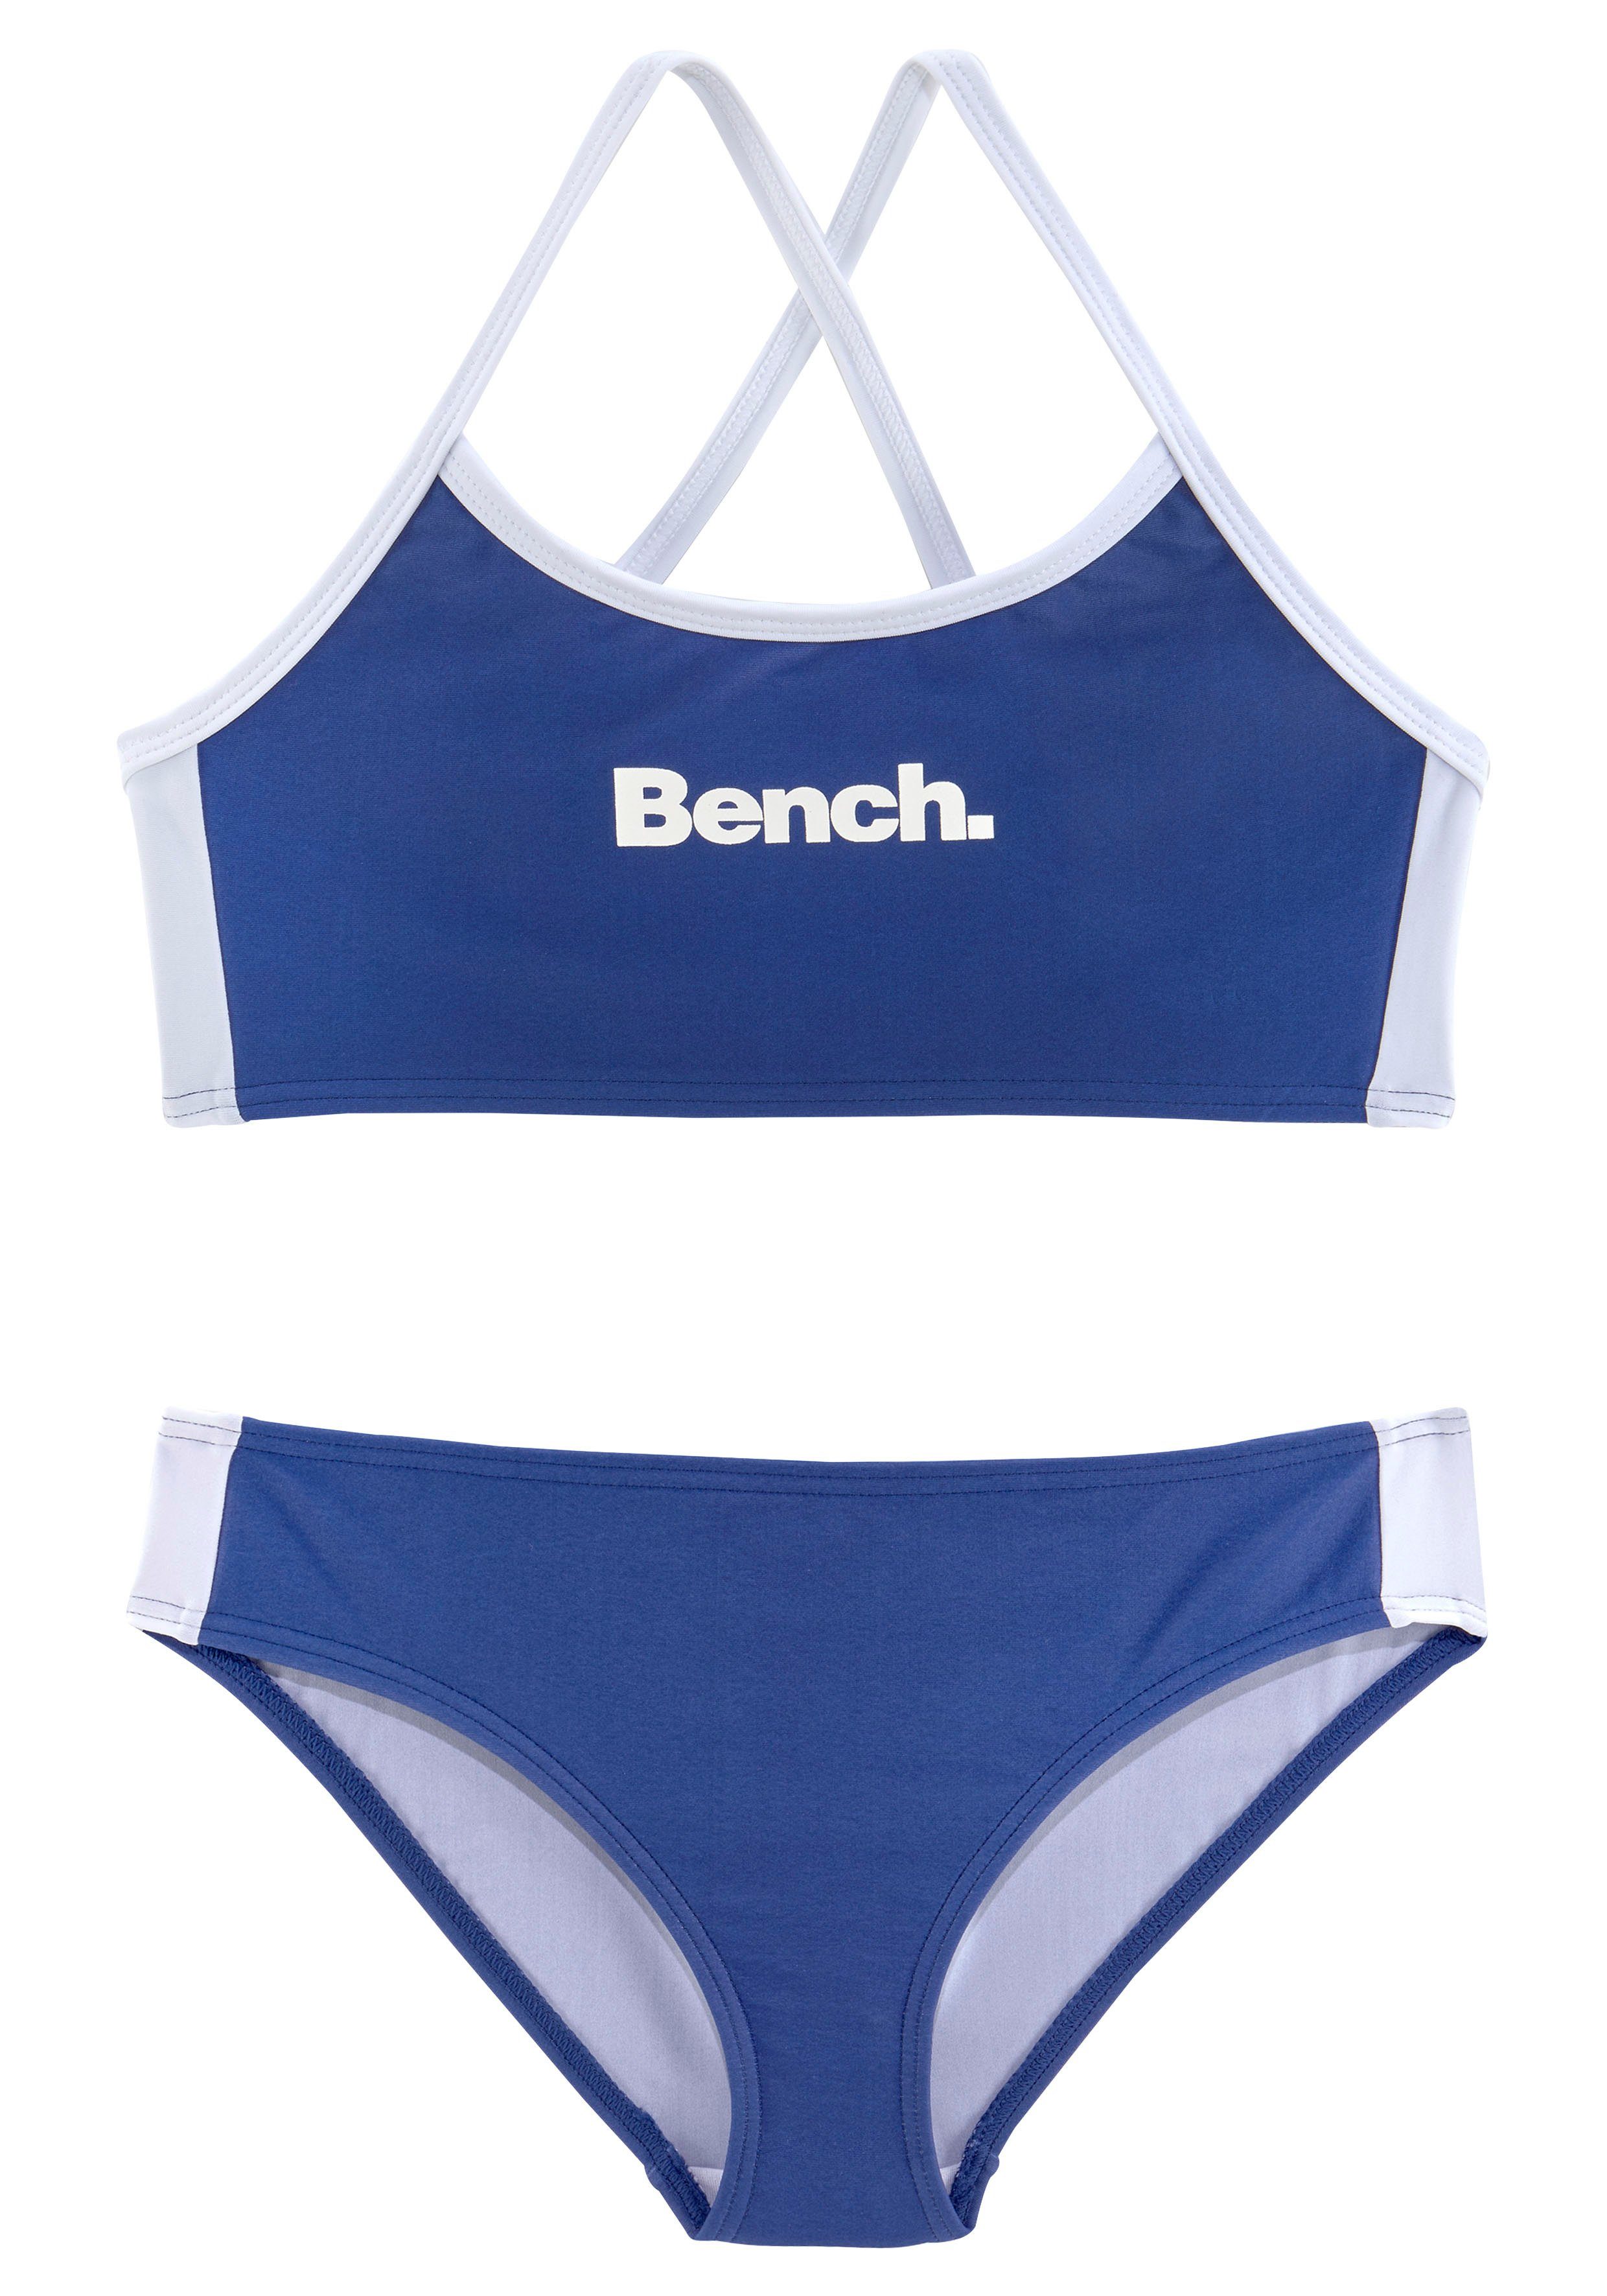 Bustier-Bikini blau-weiß Bench. mit gekreuzten Trägern